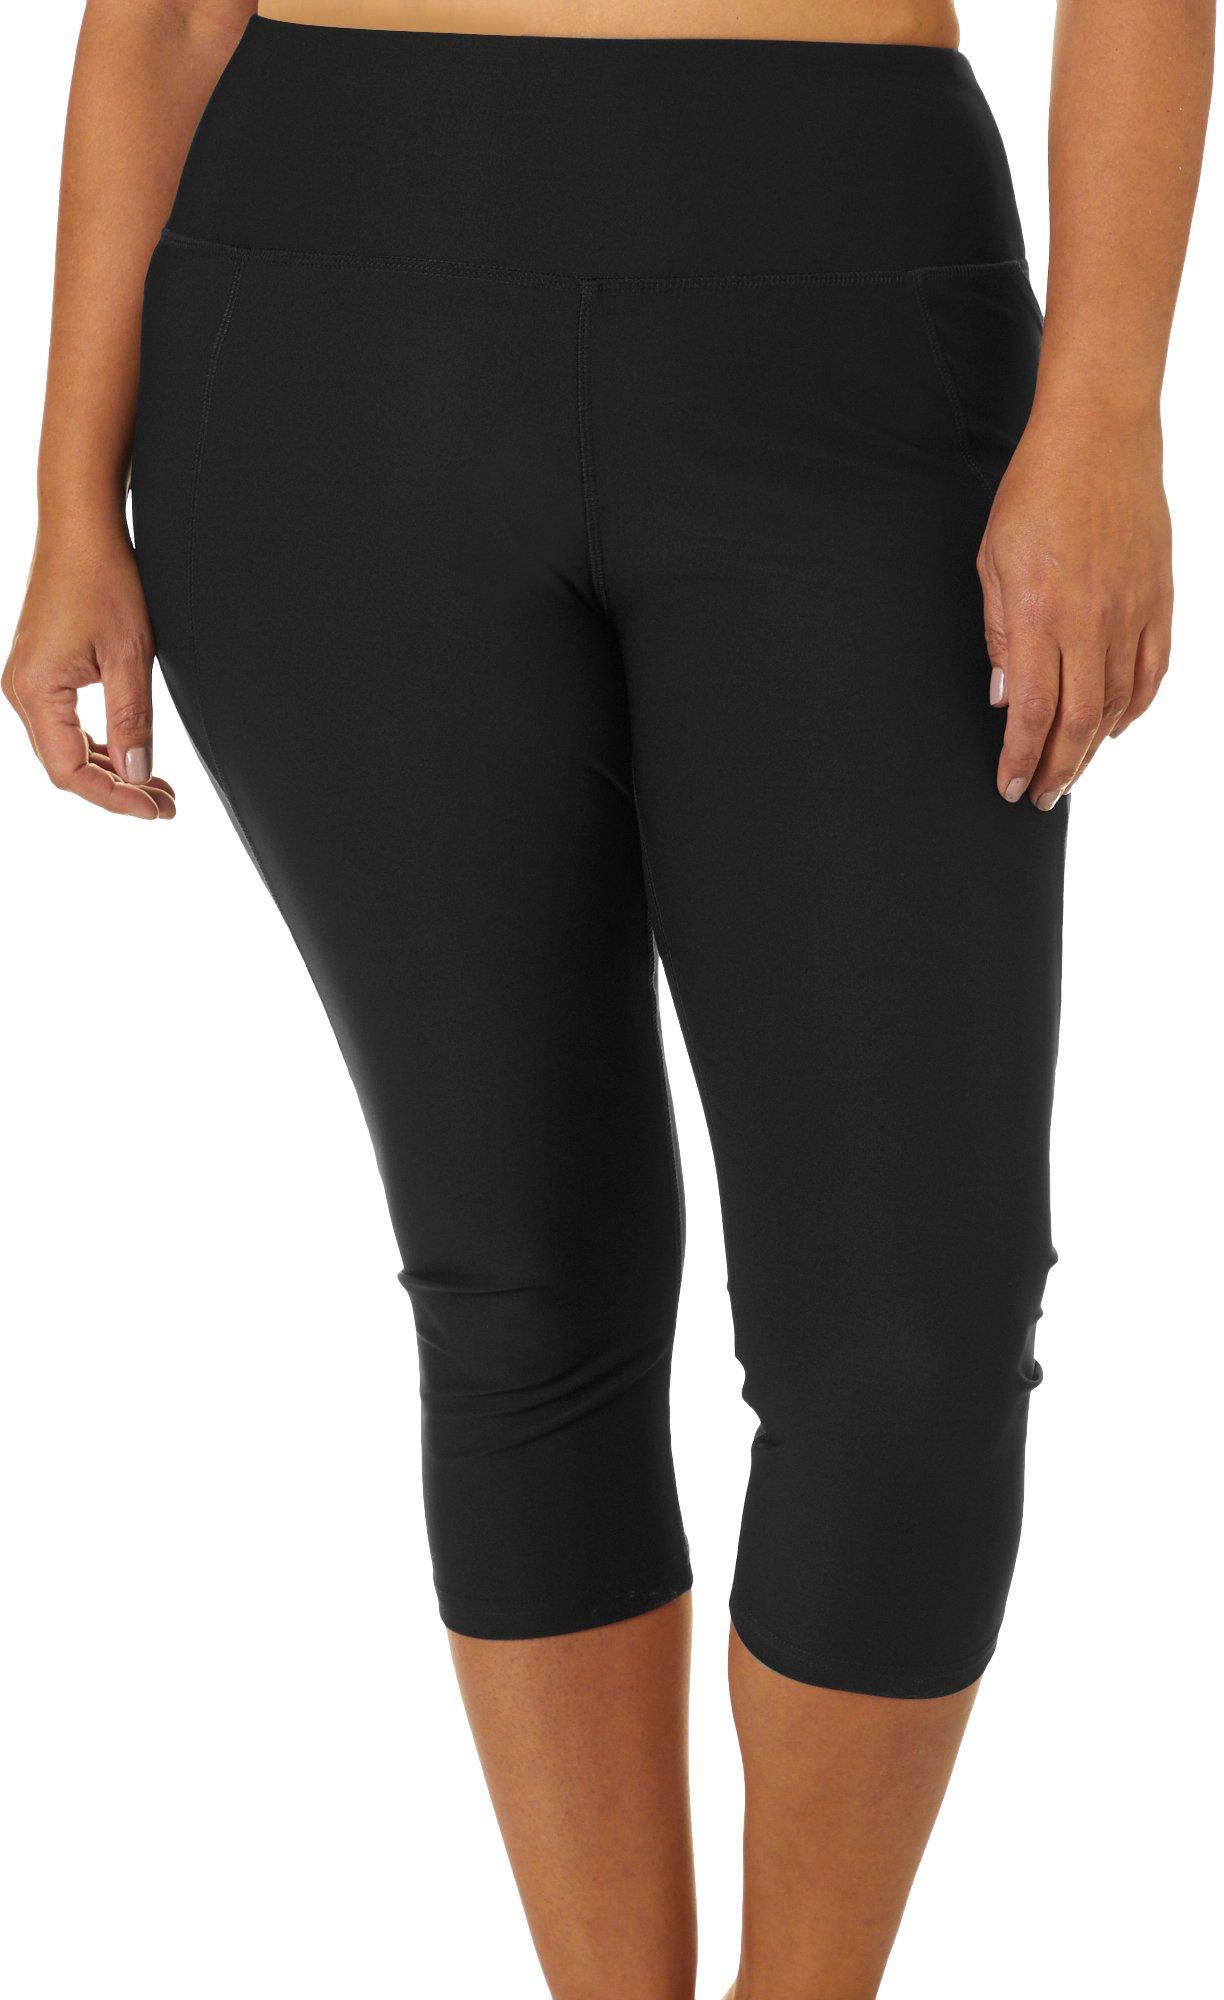 Nirlon Capri Leggings with Pockets - Capri Leggings with Pockets for Women  Breathable High Waisted Capri Leggings for Women